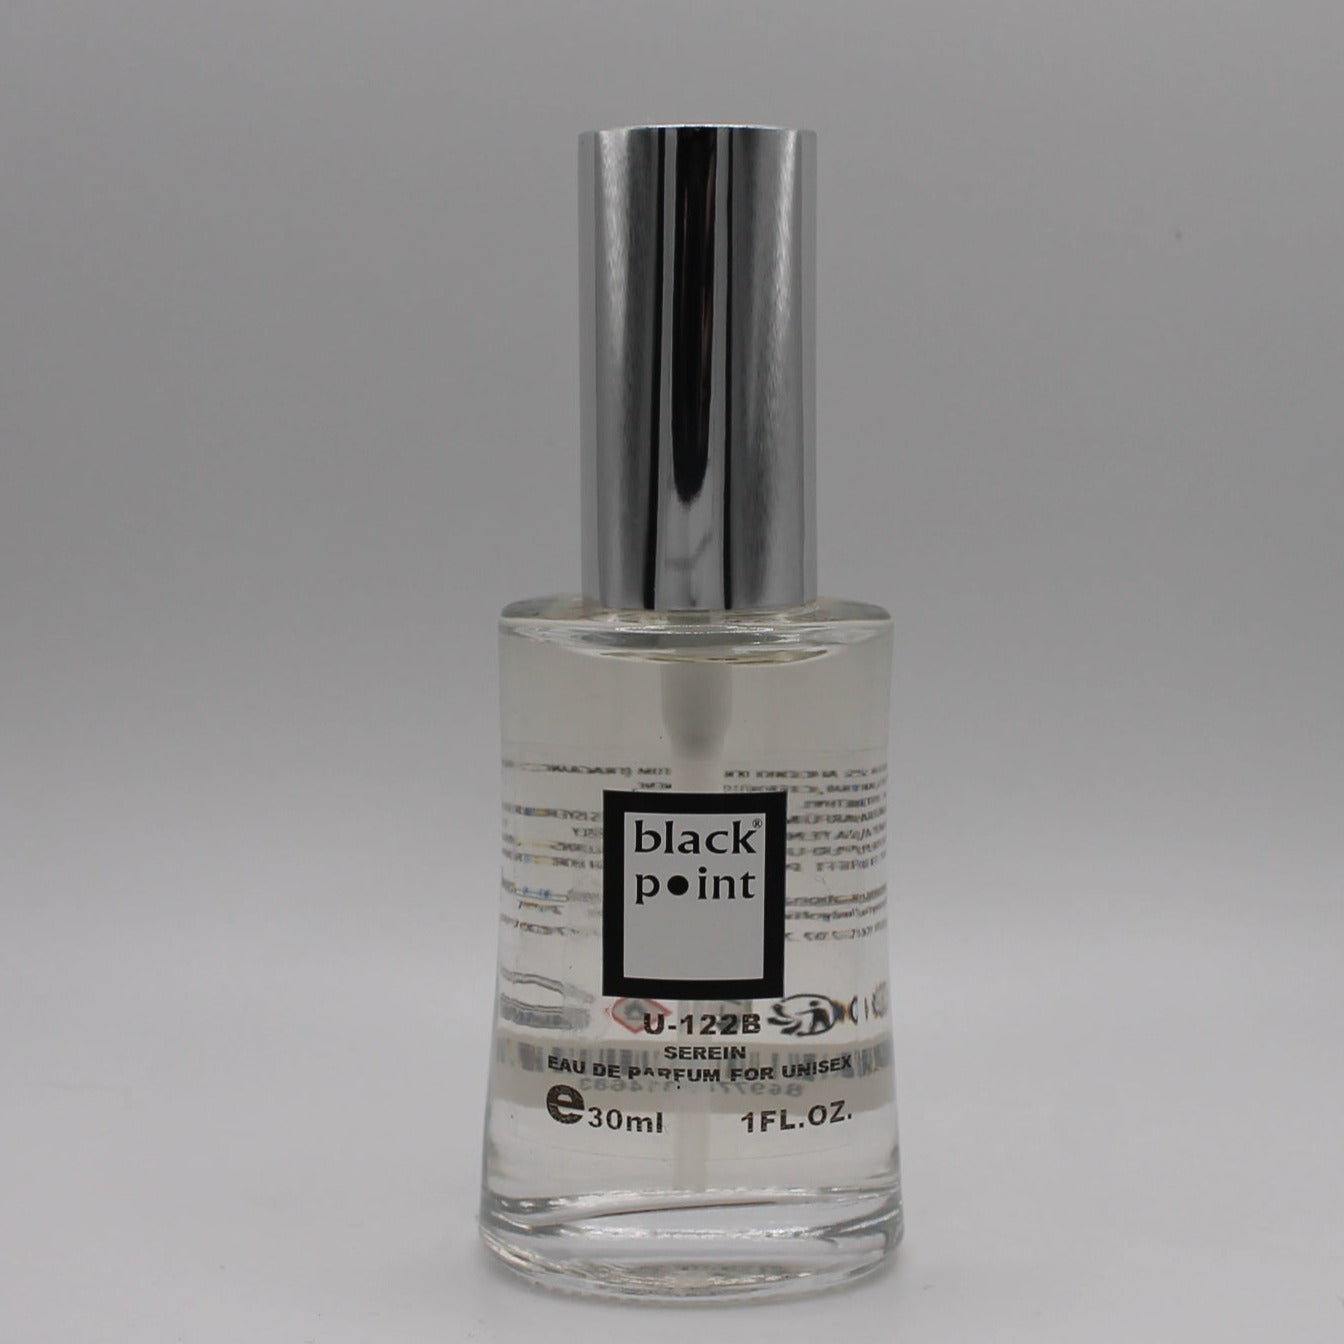 U-122B Unisex Black Point Perfumes 30ml